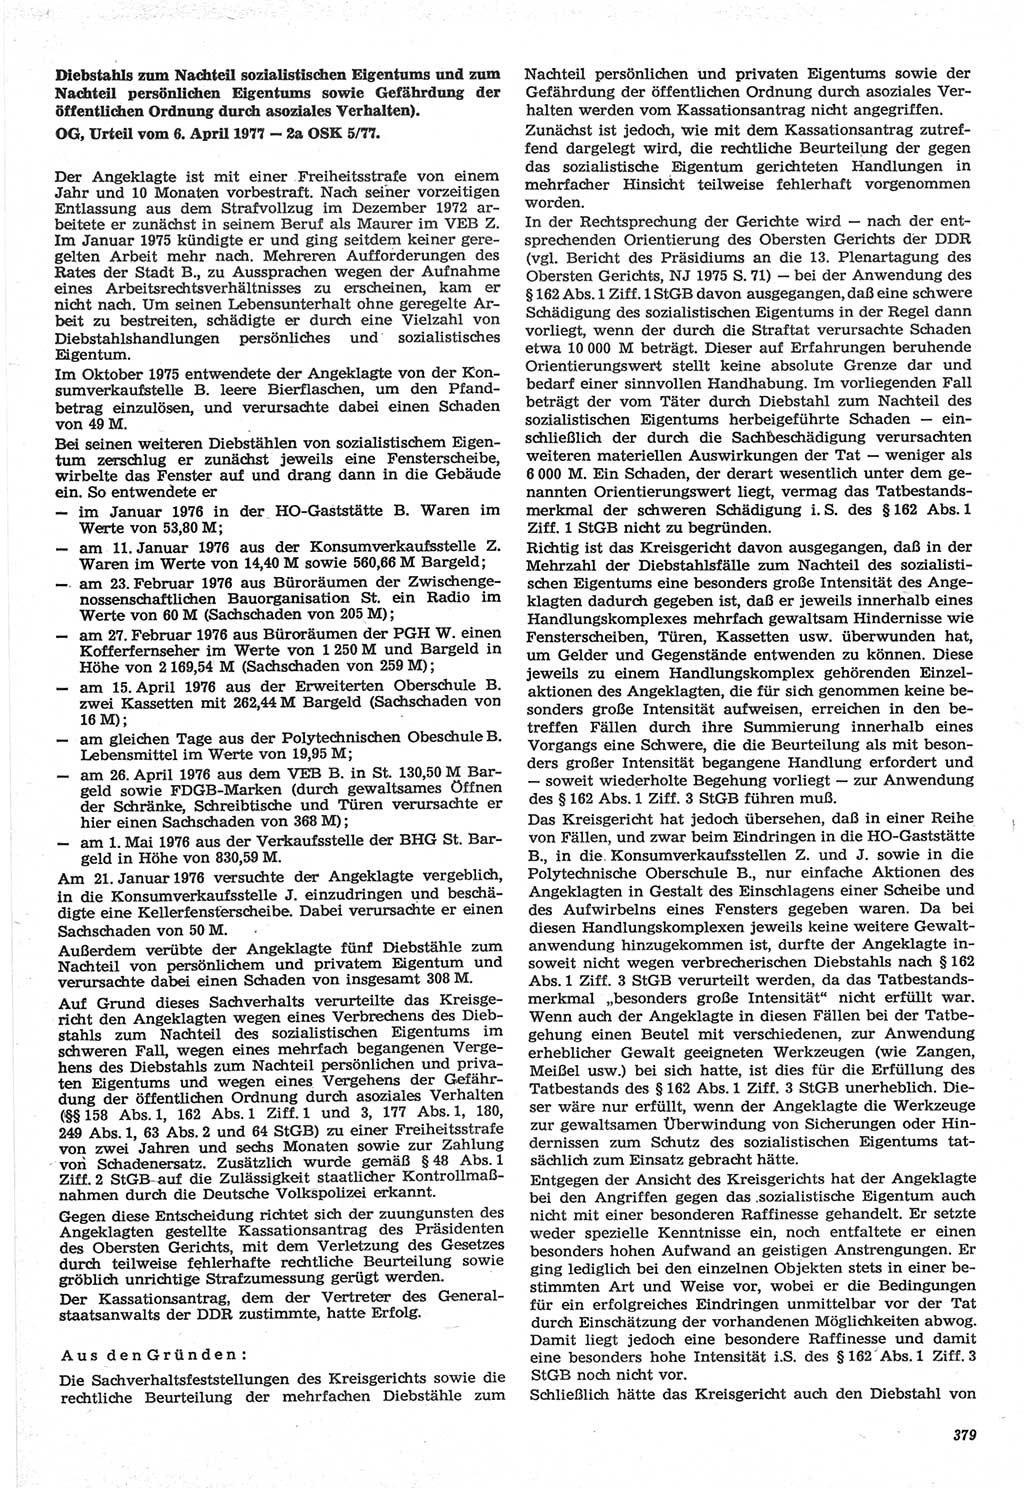 Neue Justiz (NJ), Zeitschrift für Recht und Rechtswissenschaft-Zeitschrift, sozialistisches Recht und Gesetzlichkeit, 31. Jahrgang 1977, Seite 379 (NJ DDR 1977, S. 379)